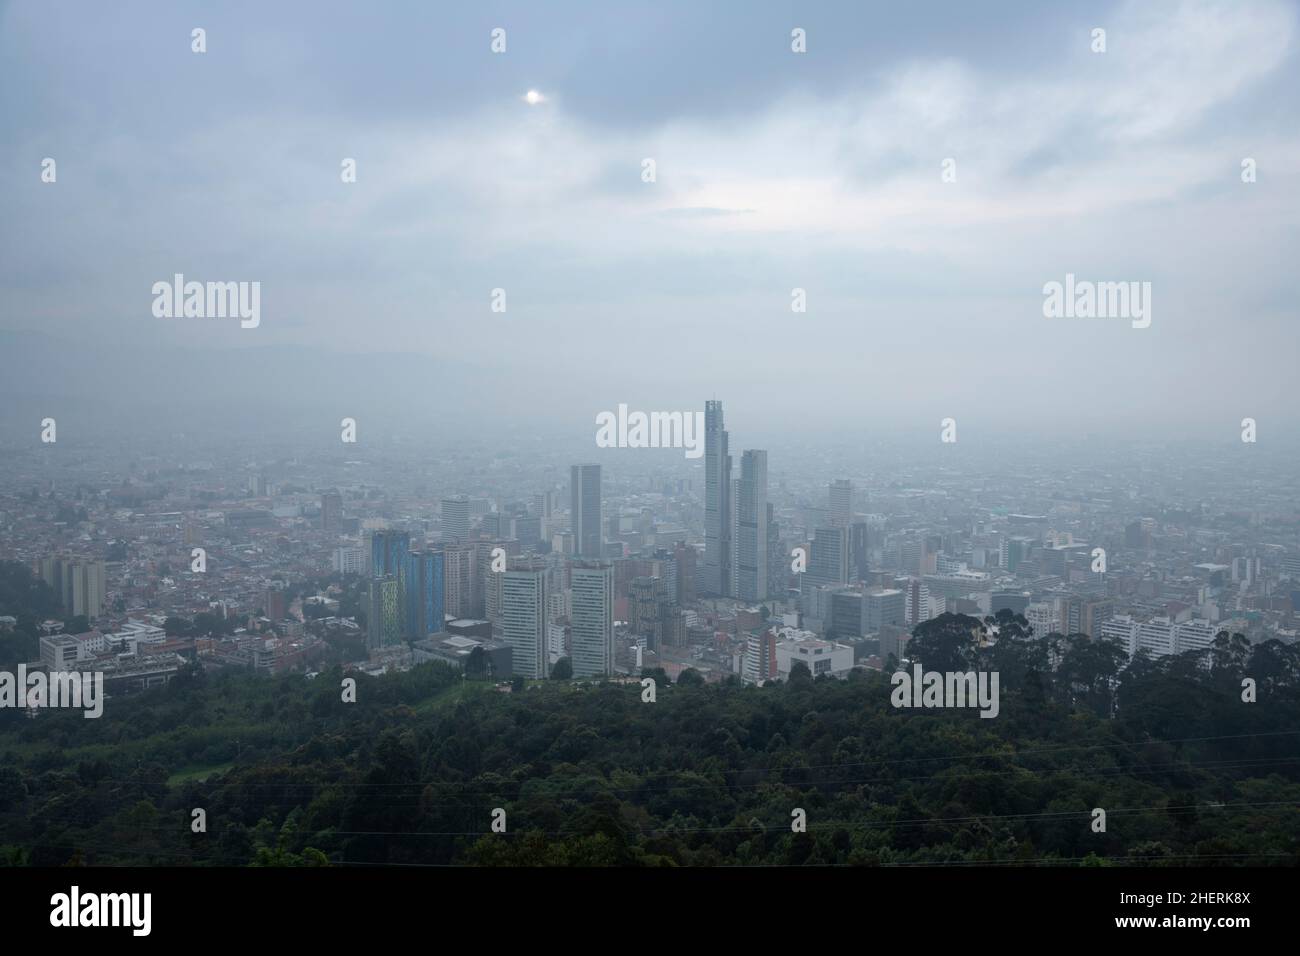 Paysage urbain brumeux du centre de Bogota, capitale de la Colombie, Amérique du Sud.Pollution et conditions météorologiques causant un smog au-dessus de la ville. Banque D'Images